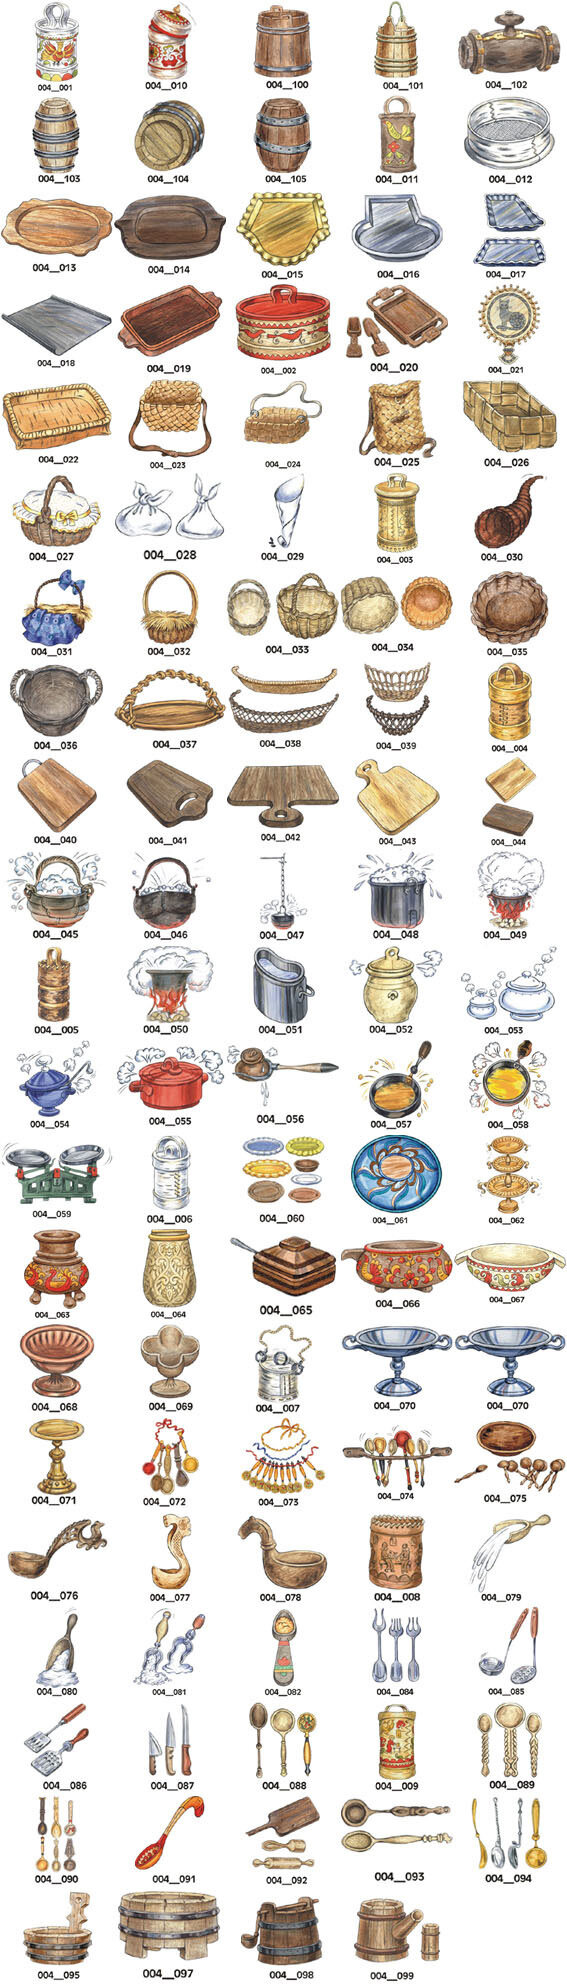 筐篮盆盘刀叉勺子等厨房用品AI矢量素材图片